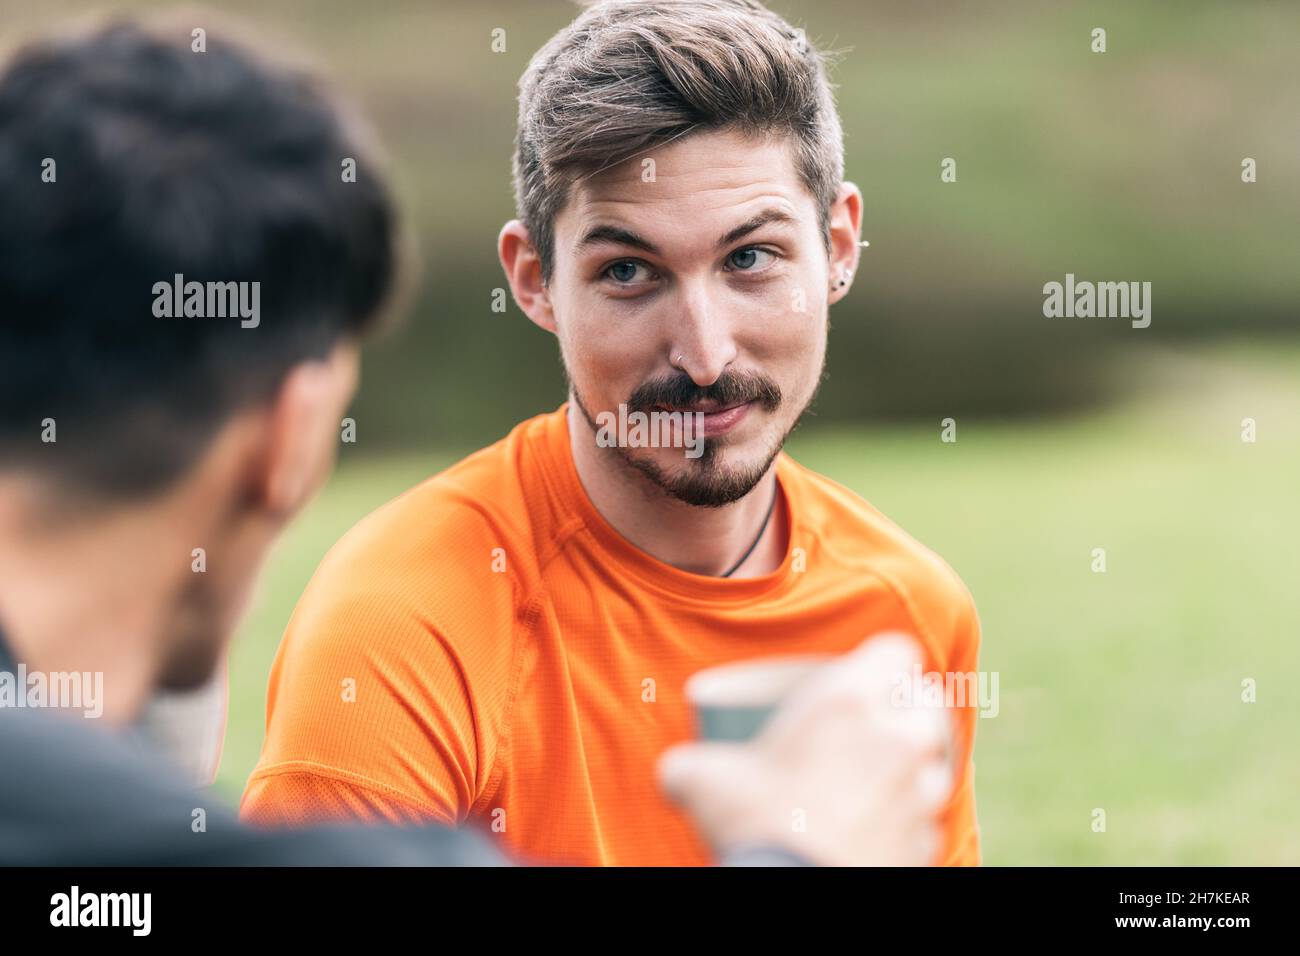 Le visage heureux d'un homme sportif qui boit du thé avec d'autres personnes dans un parc Banque D'Images